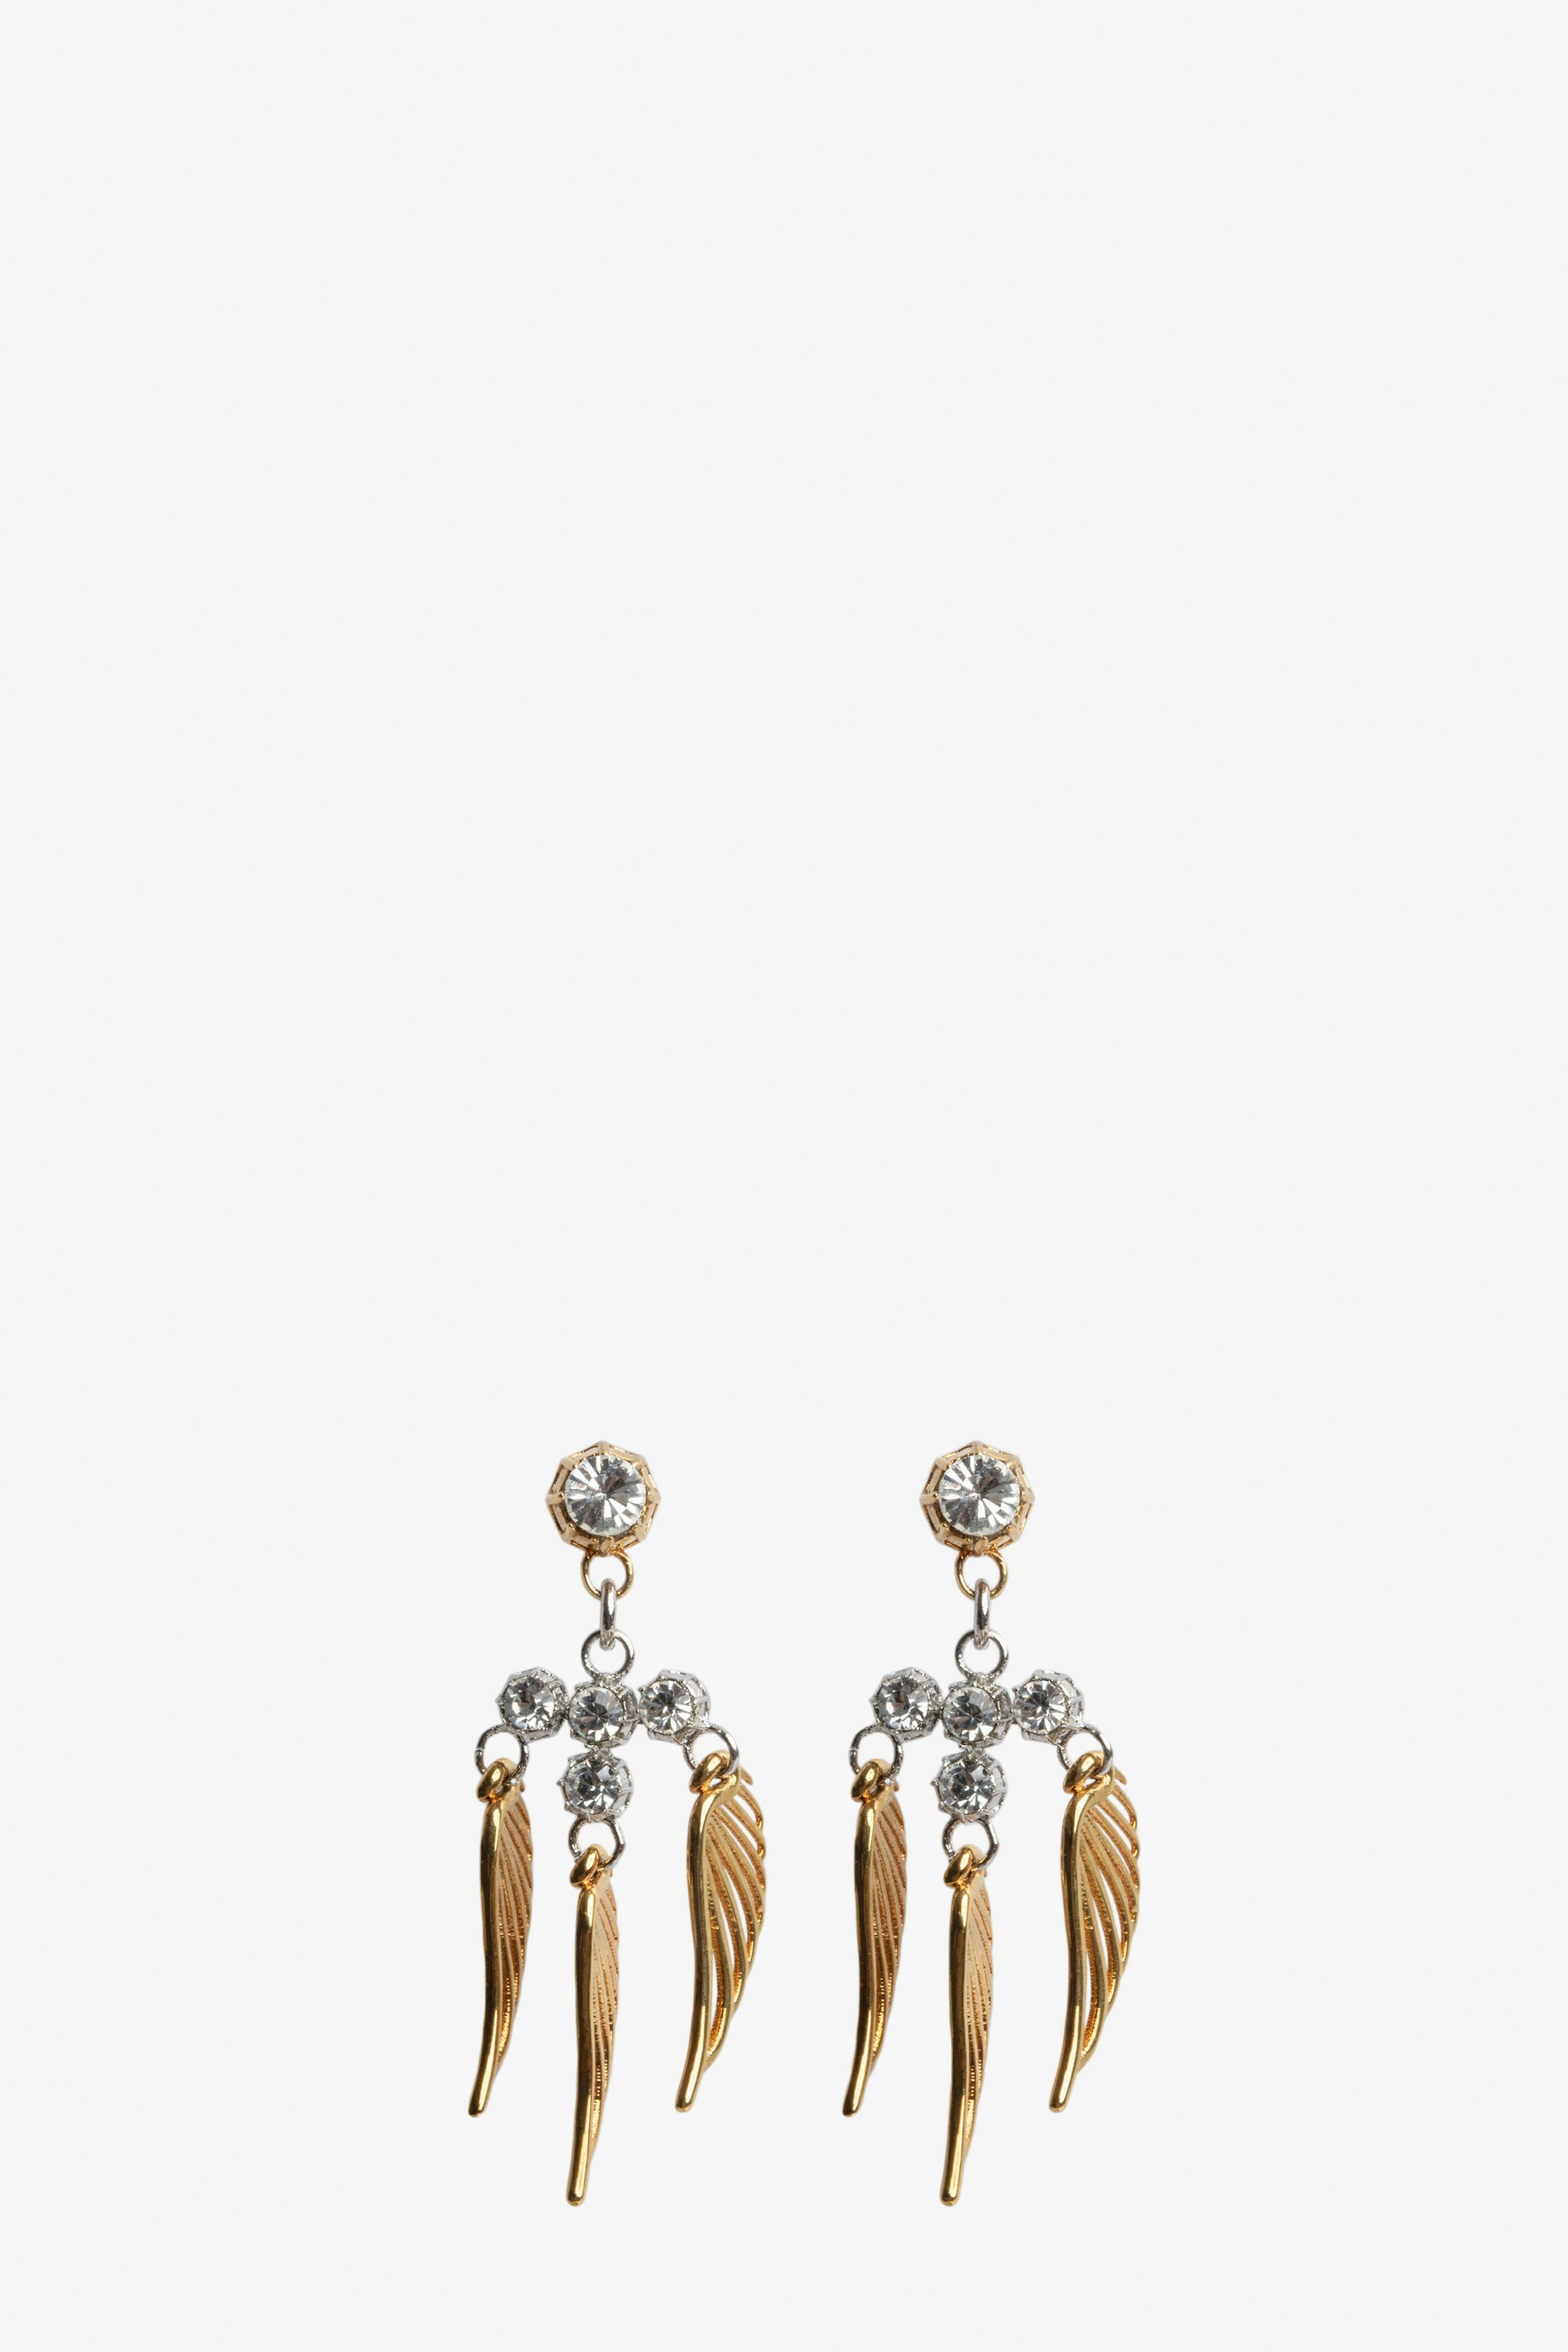 Rock Over Small Earrings Women's gold-tone brass wings earrings.